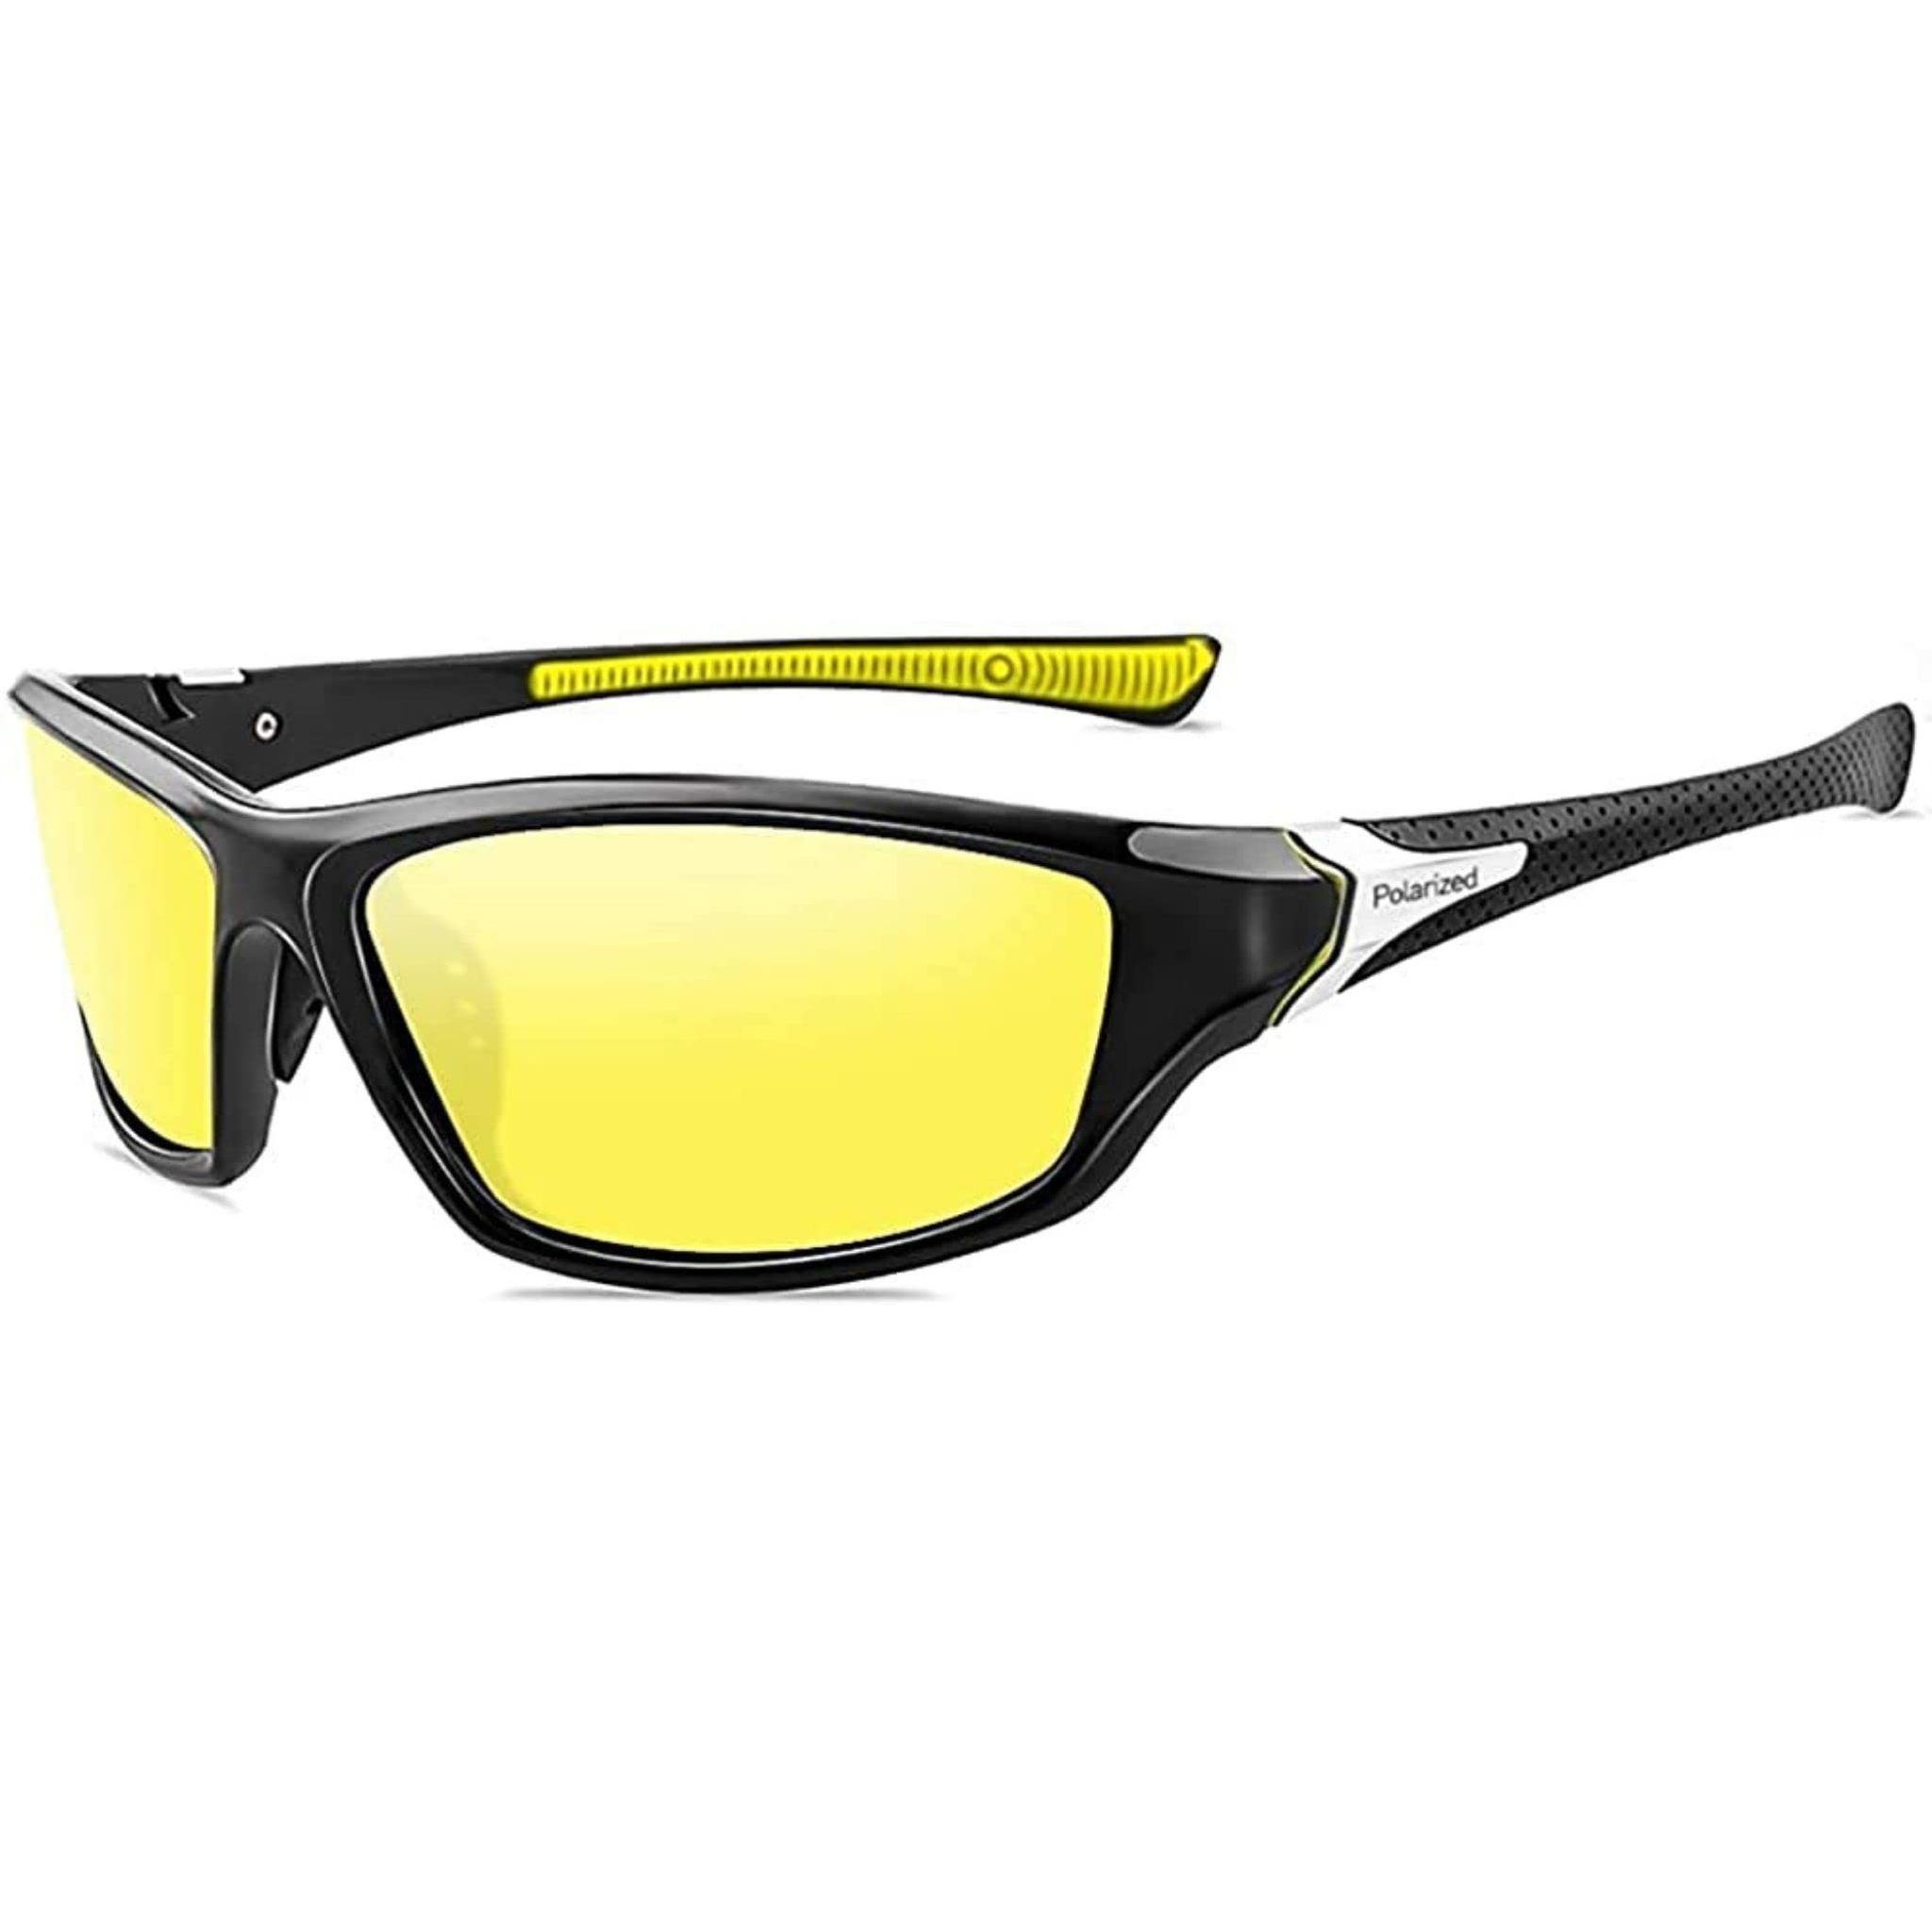 4Flaunt UV Protected & Polarized Sports Sunglasses